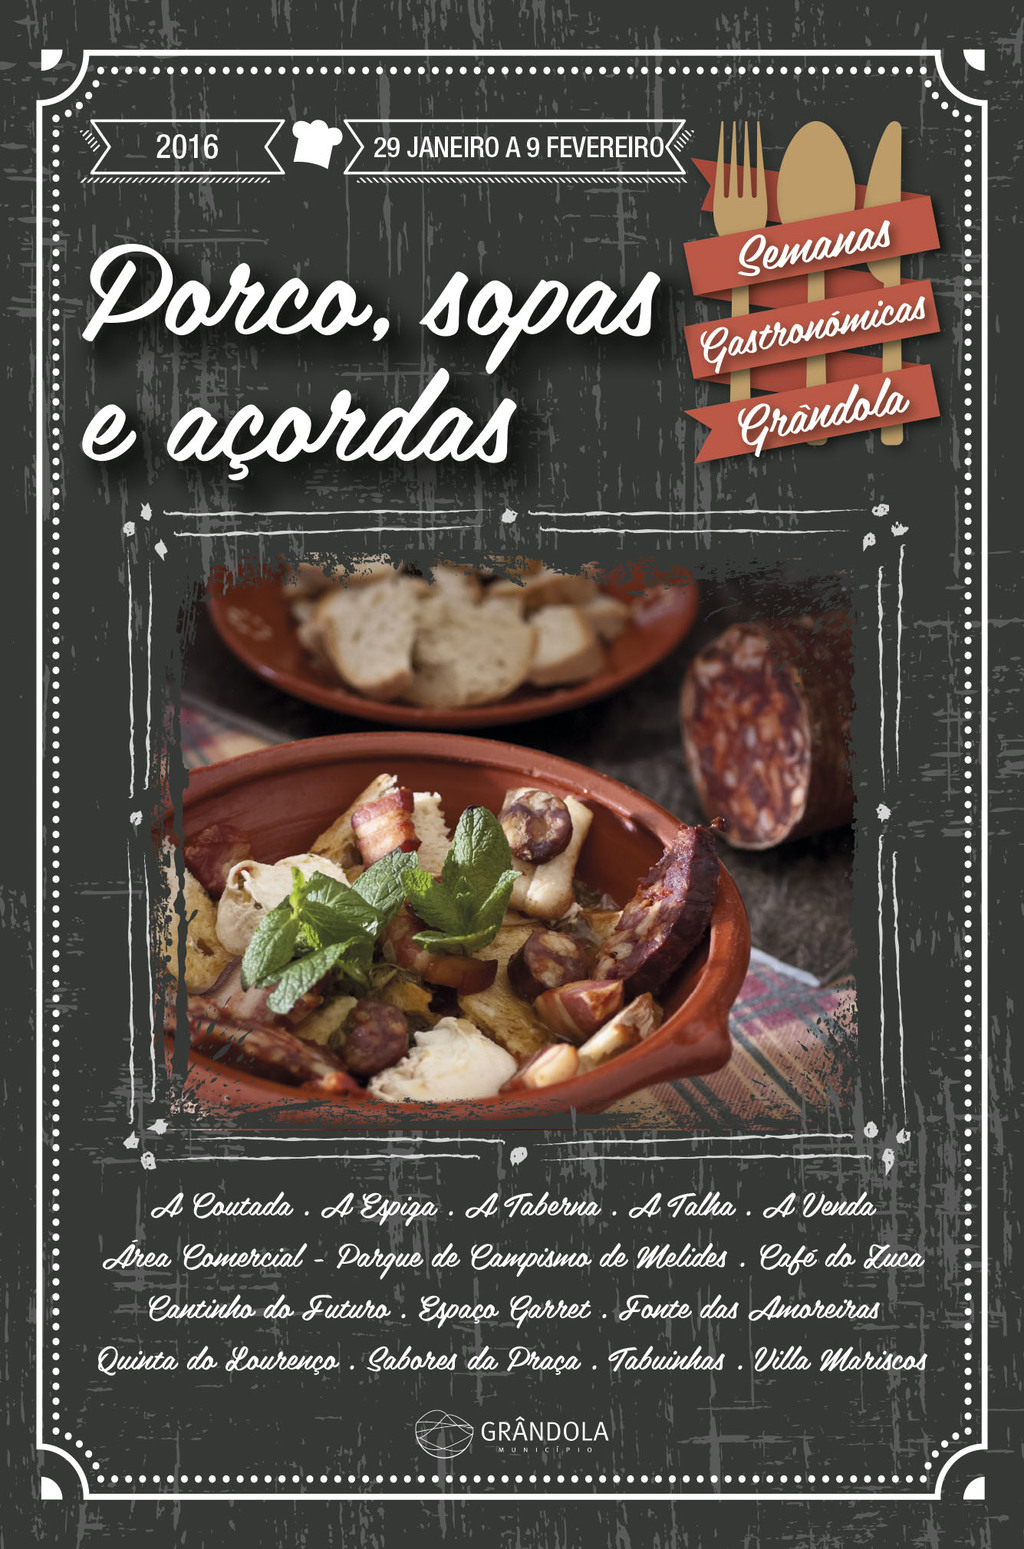 Grândola apresenta Semana Gastronómica do Porco, Sopas e Açordas * 29 de Janeiro a 9 de Fevereiro